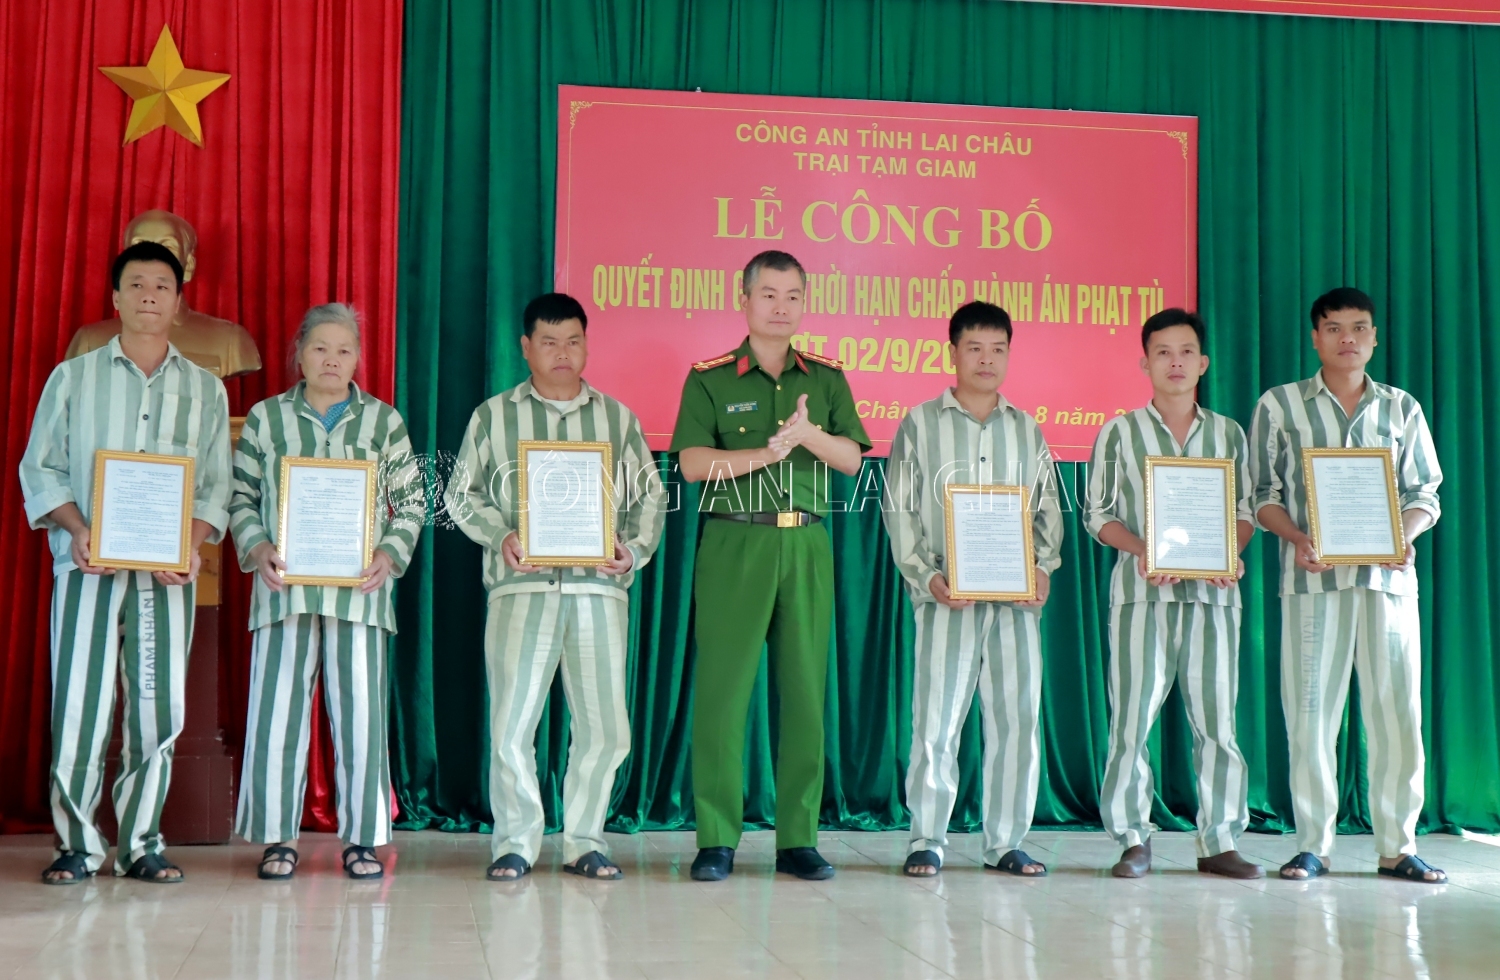 Đại tá Nguyễn Tuấn Hưng - Phó Giám đốc Công an tỉnh trao quyết định giảm thời hạn chấp hành án phạt tù cho phạm nhân